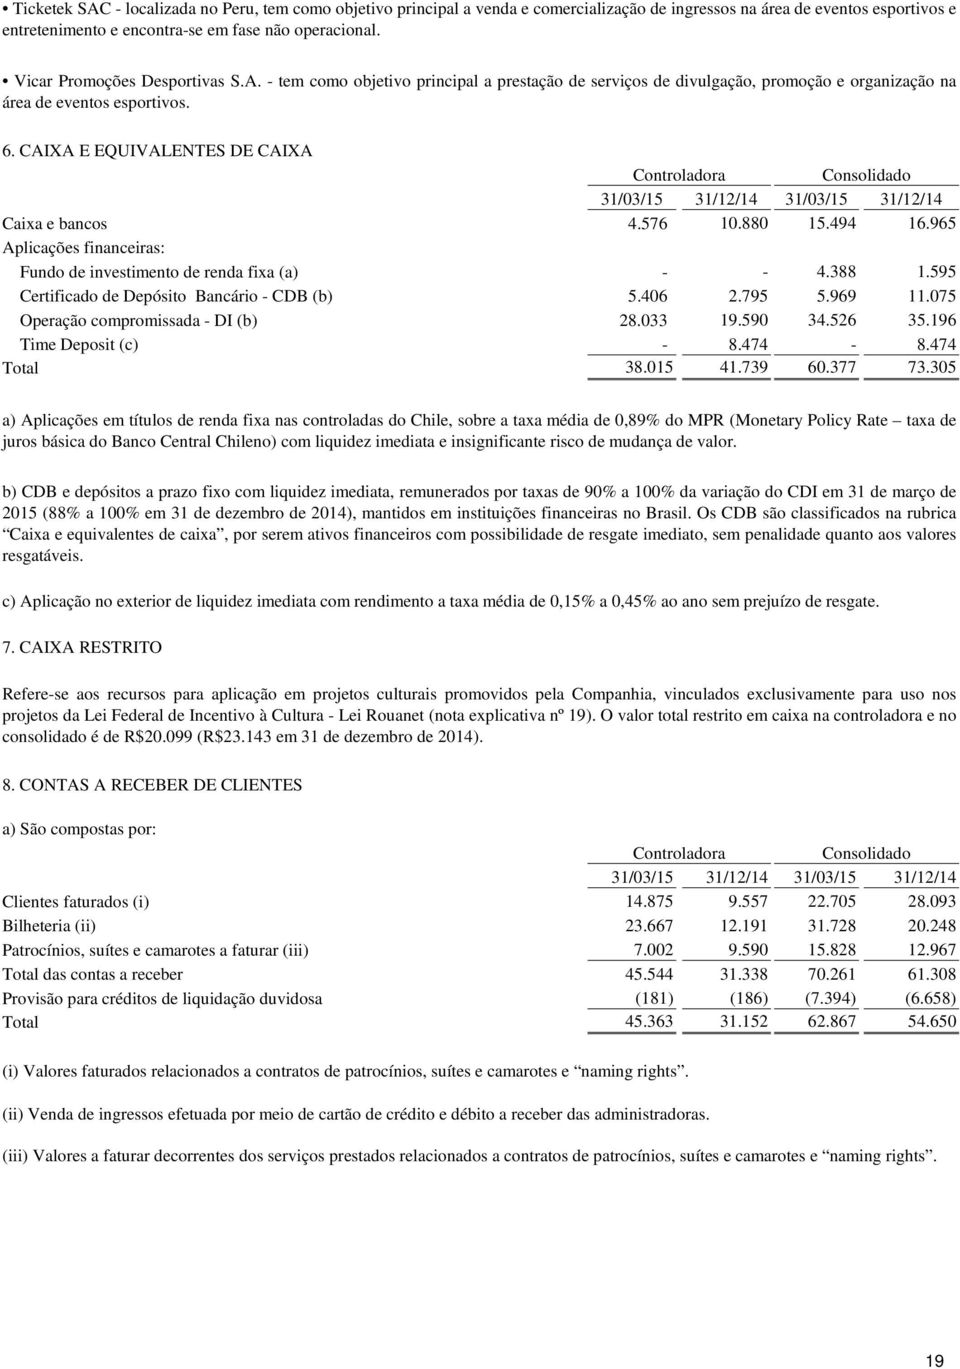 CAIXA E EQUIVALENTES DE CAIXA 31/03/15 31/12/14 31/03/15 31/12/14 Caixa e bancos 4.576 10.880 15.494 16.965 Aplicações financeiras: Fundo de investimento de renda fixa (a) - - 4.388 1.